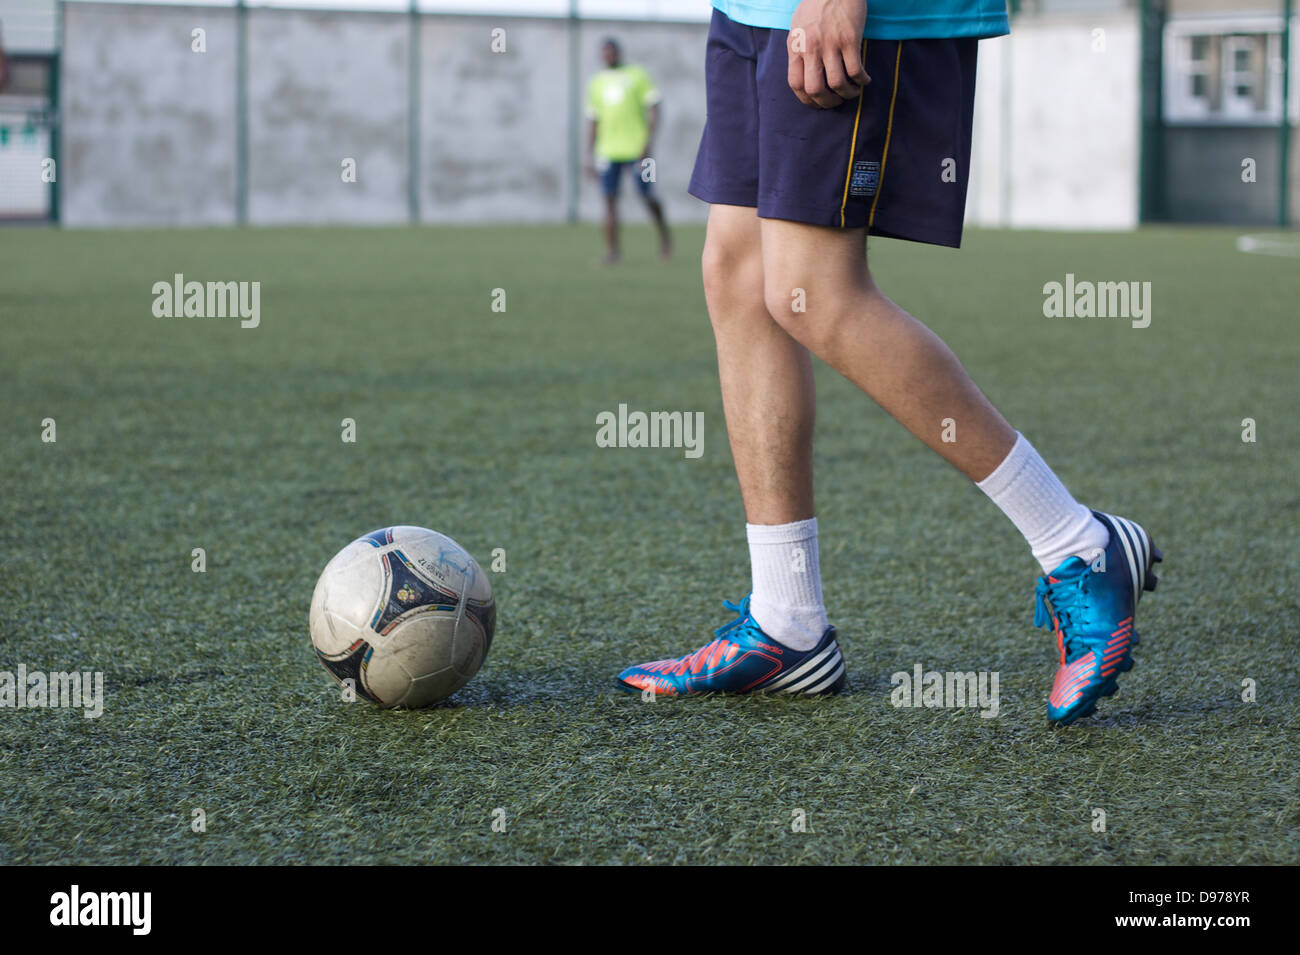 Un joueur avec une balle à ses pieds. Jouer au football. Jouer au soccer. Banque D'Images